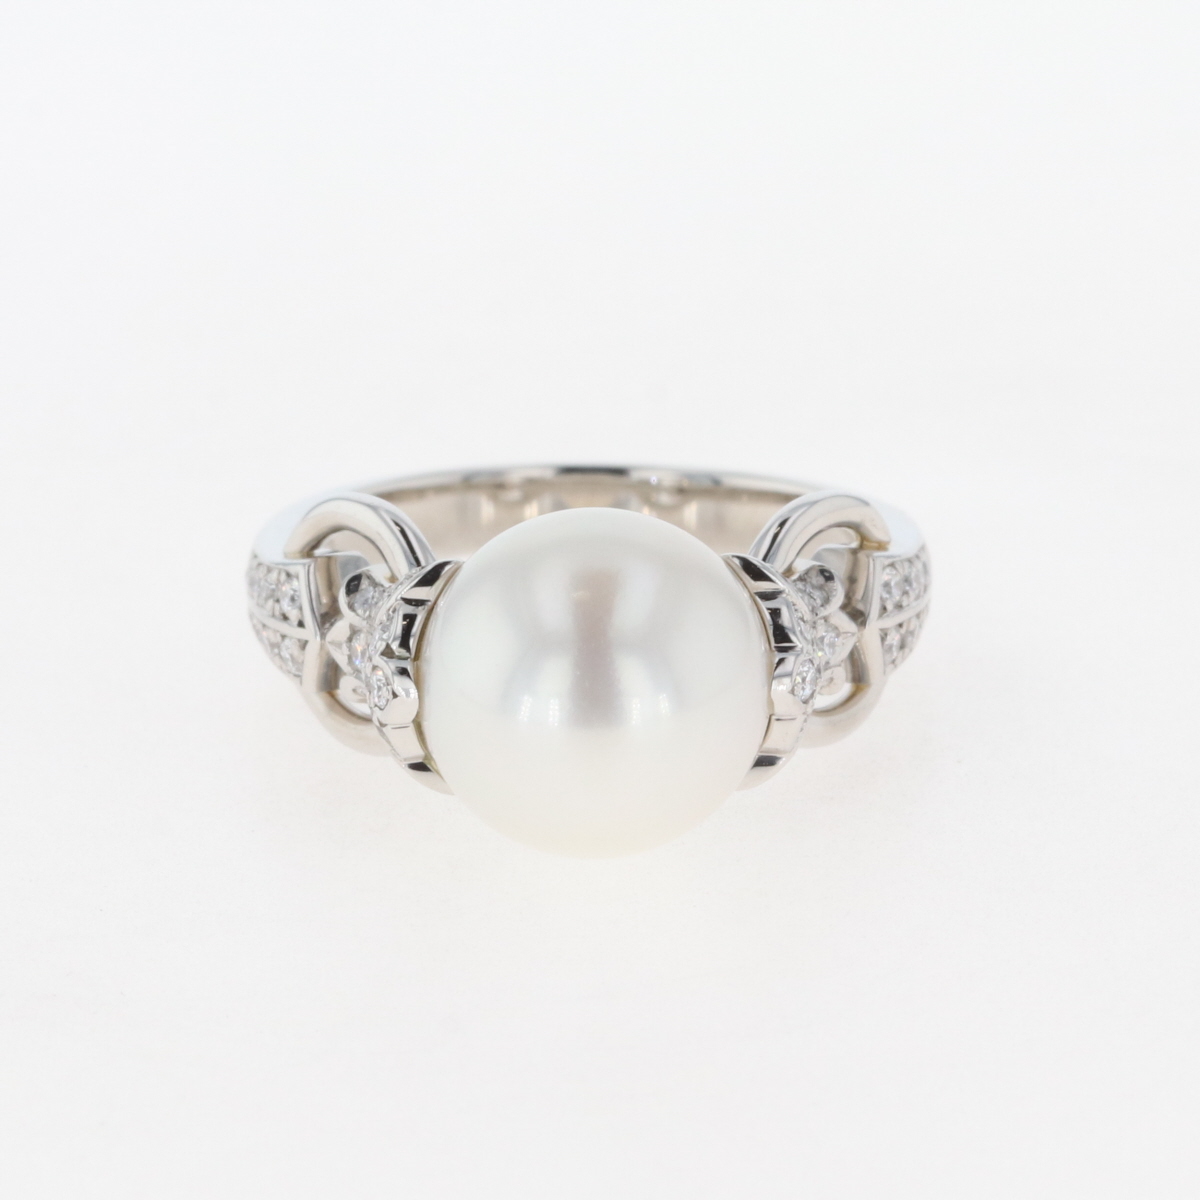  パール デザインリング プラチナ メレダイヤ 指輪 真珠 リング 13号 Pt950 パール ダイヤモンド レディース 